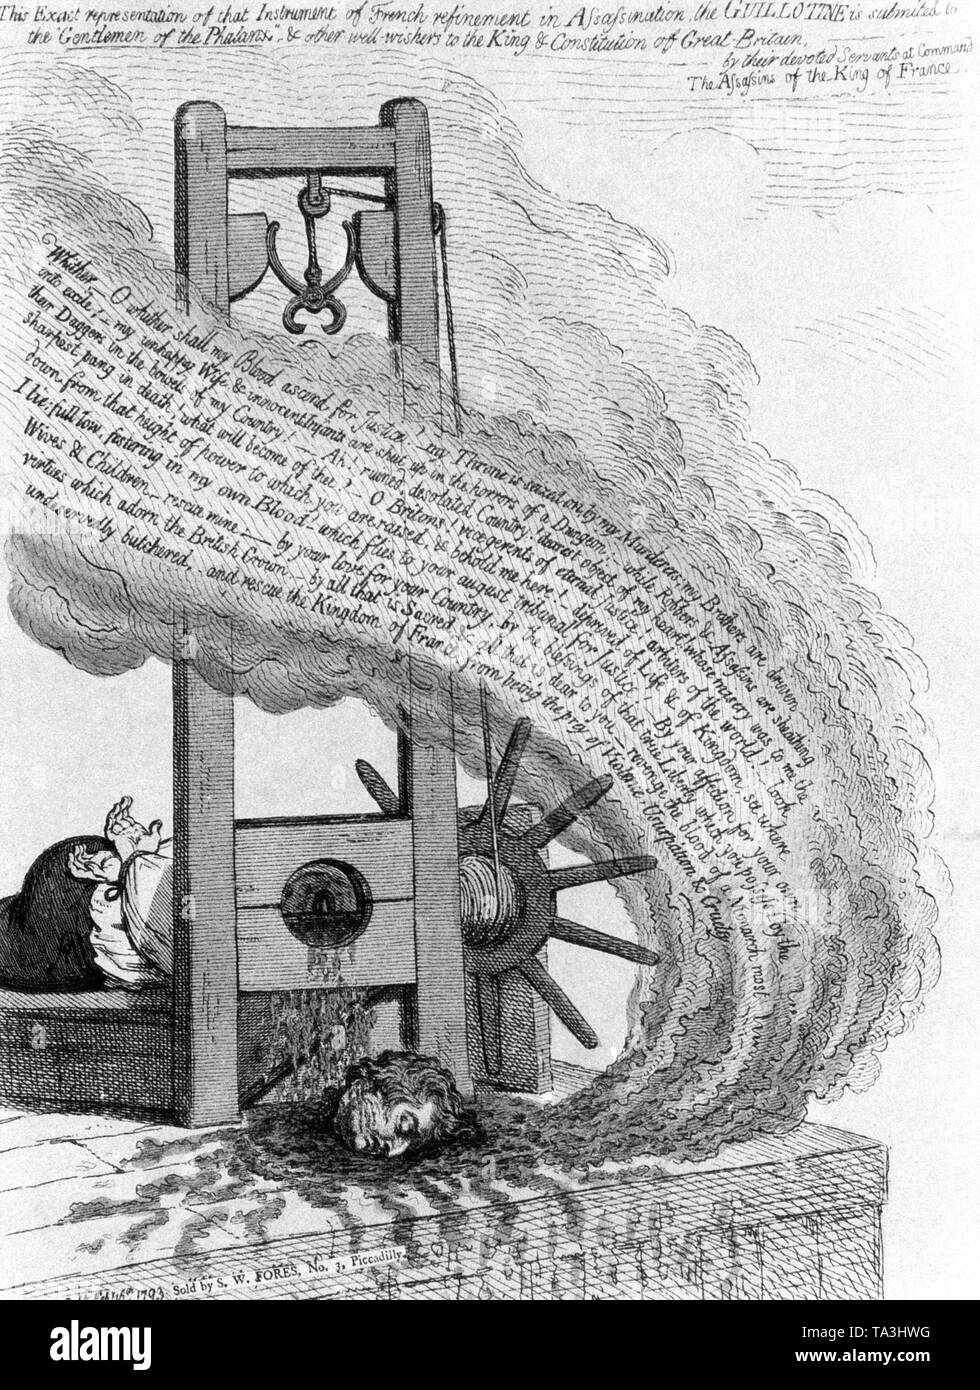 Von der britischen Verfasser James Gillray für die Hinrichtung des französischen Königs Louis XVI. graviert Gillray rief seine Zeichnung "Das Blut der Ermordeten schreien heraus für Vengeance'. Stockfoto